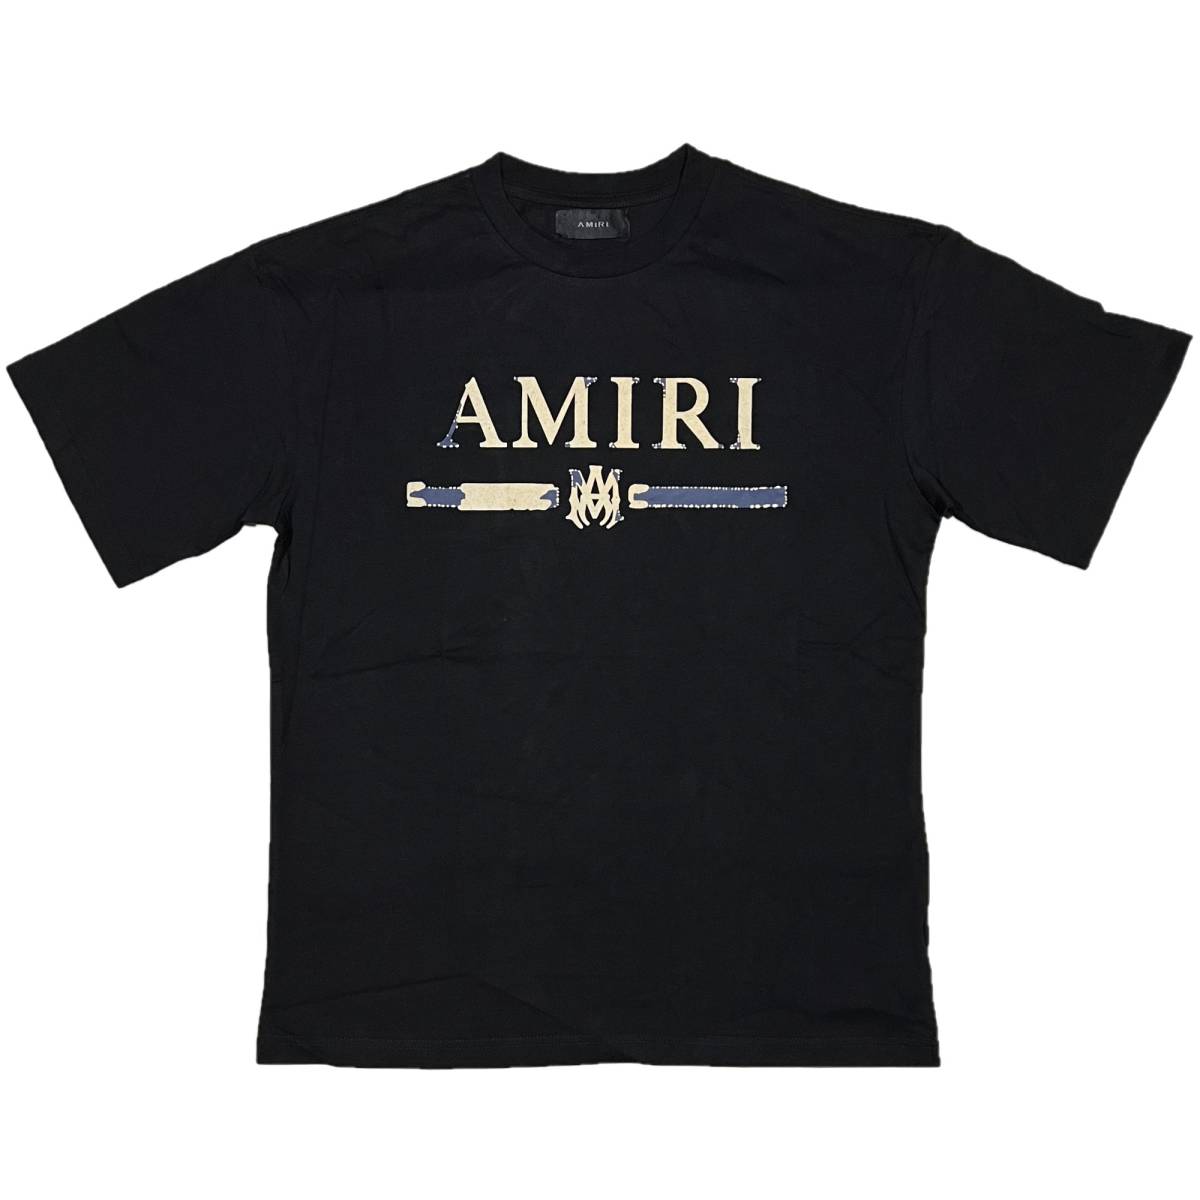 好きに 半袖 MAバー shirt T S/S Appliqu Bar M.A. アミリ AMIRI [並行輸入品] Tシャツ (L) (ブラック) 文字、ロゴ